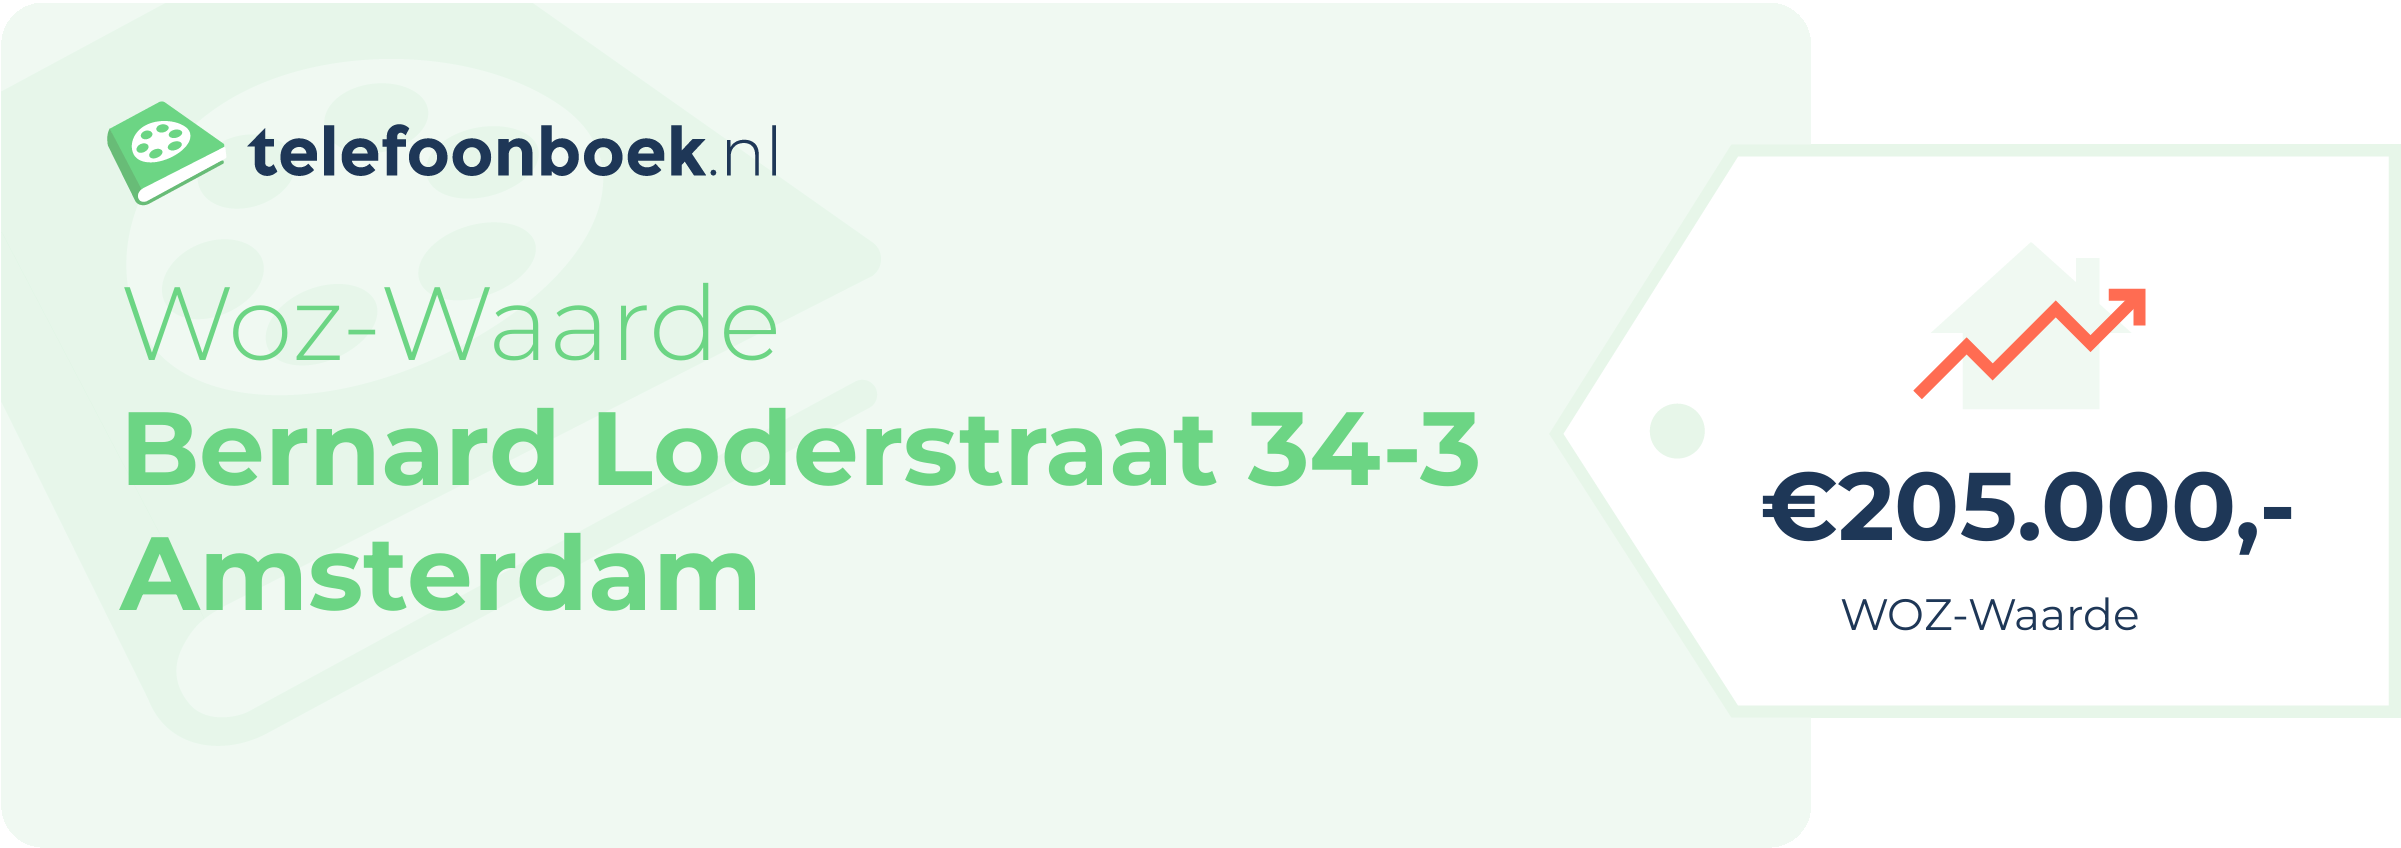 WOZ-waarde Bernard Loderstraat 34-3 Amsterdam